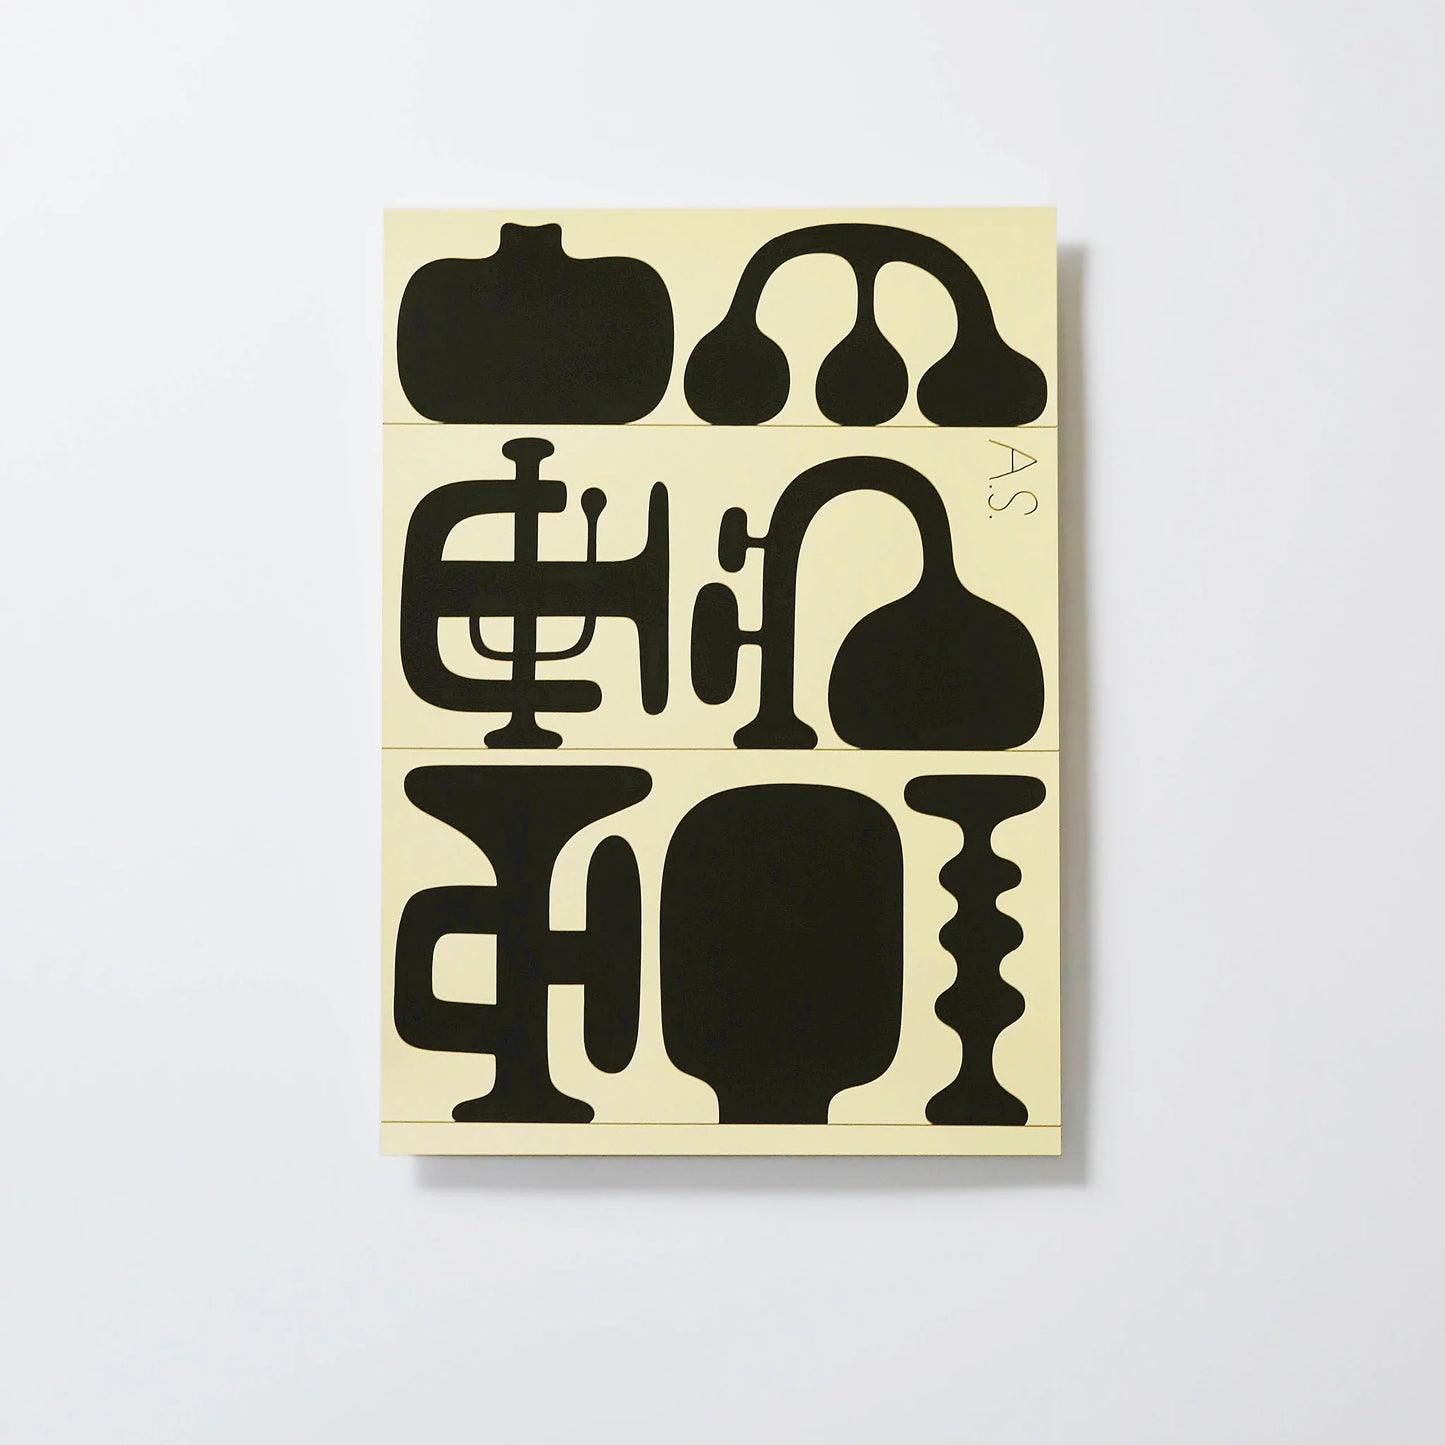 Andreas Samuelsson - Silkscreen print